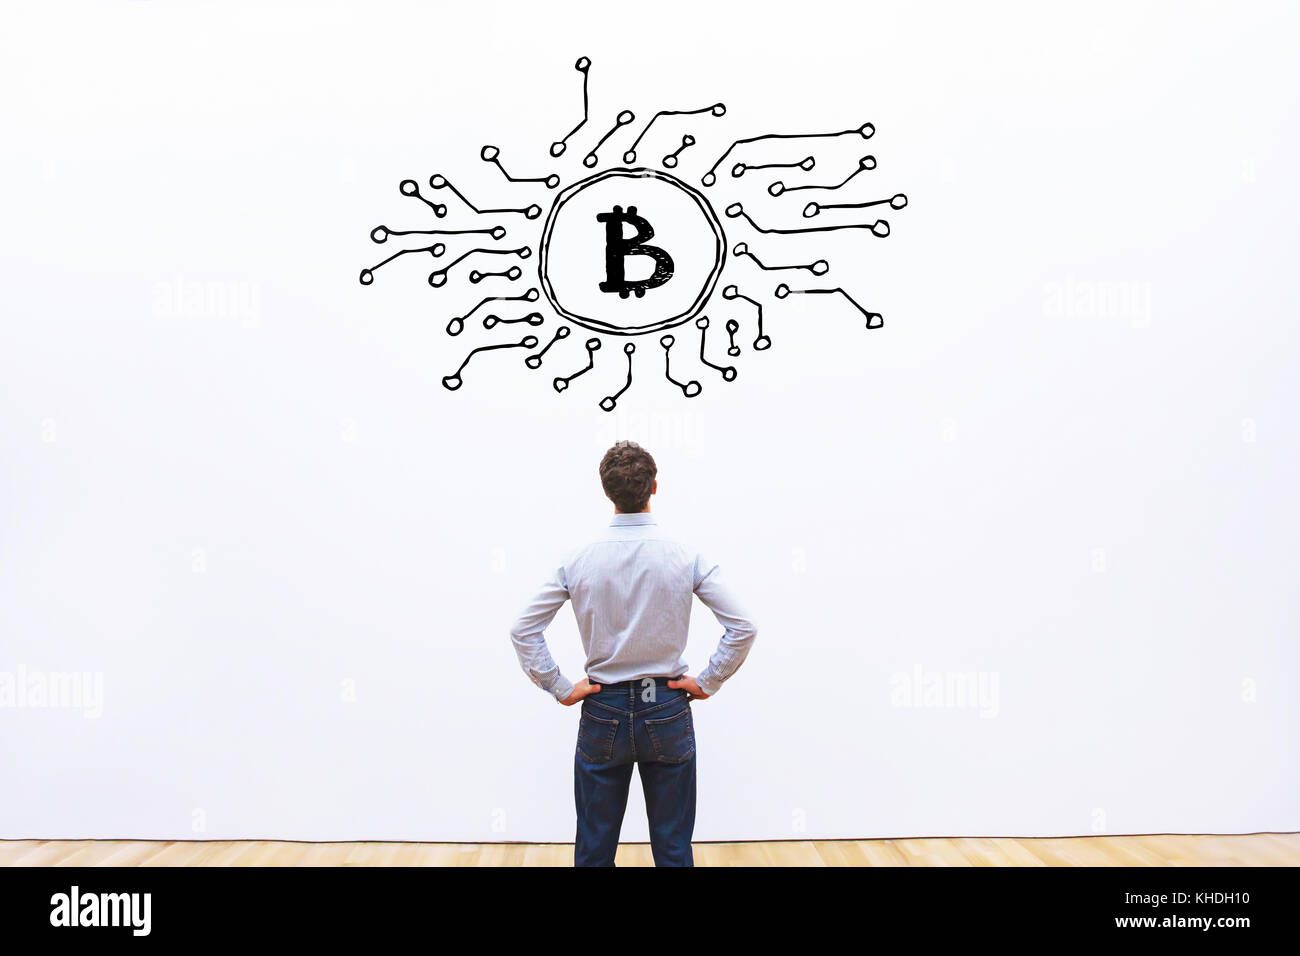 bitcoin concept Stock Photo